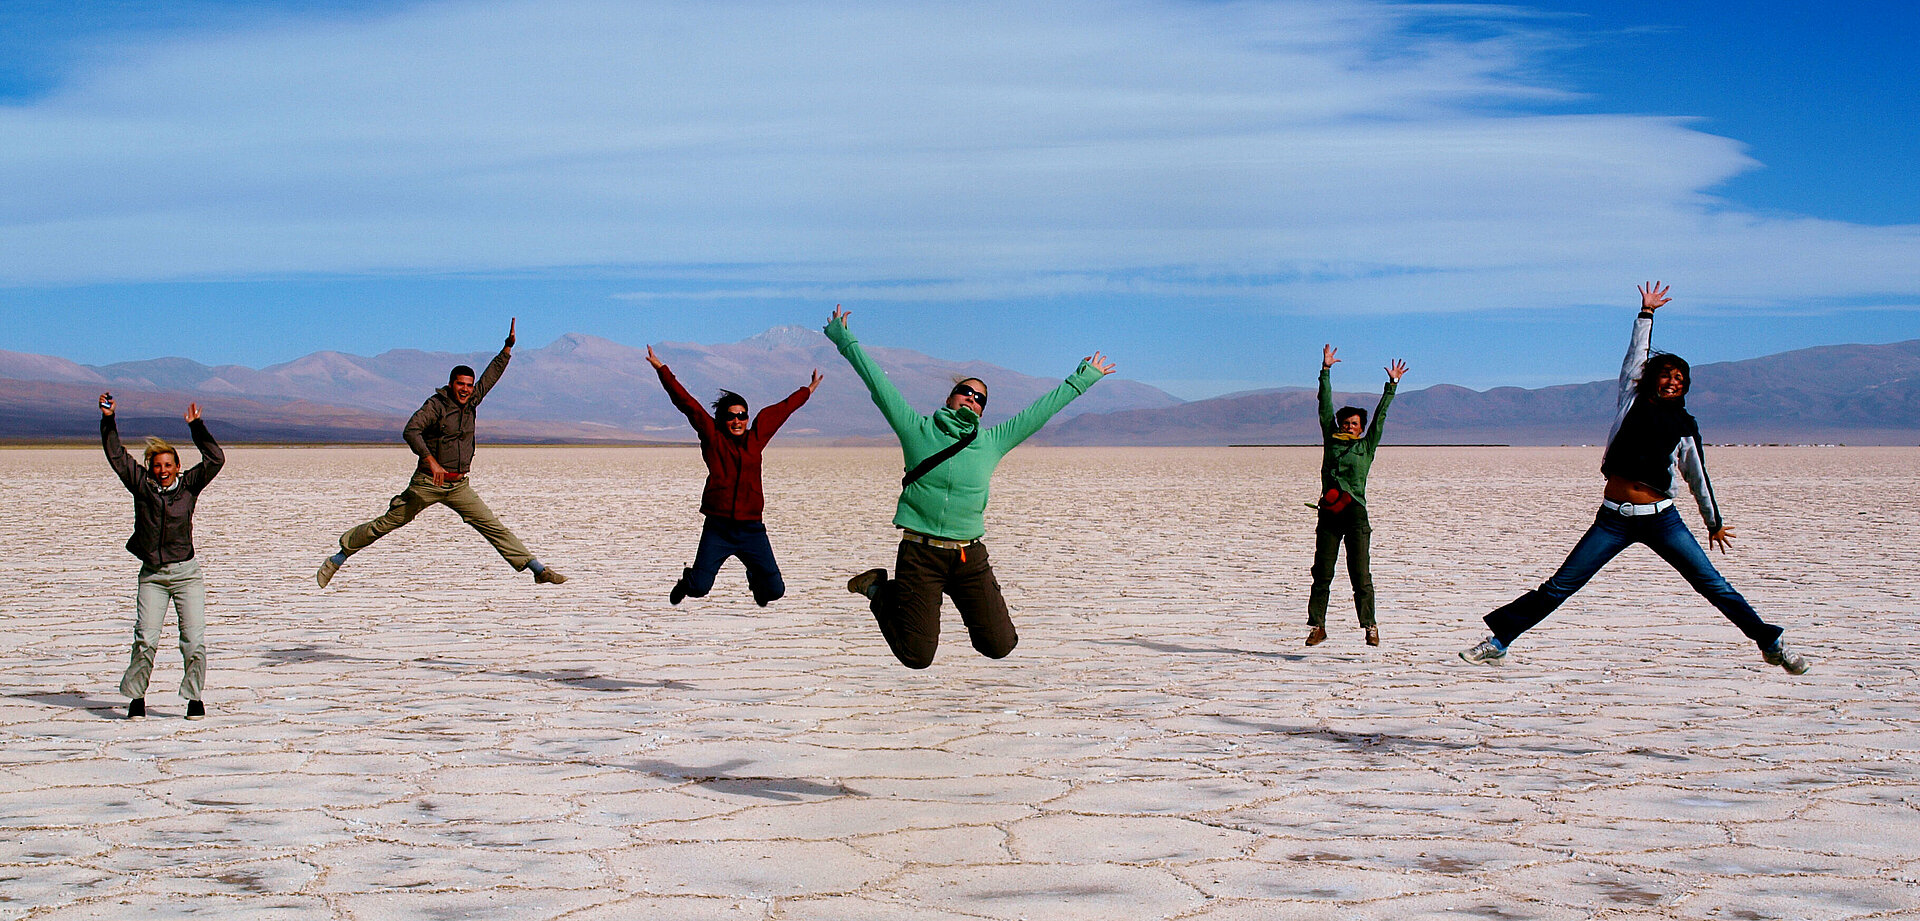 Menschen machen Luftsprung in Wüstenlandschaft